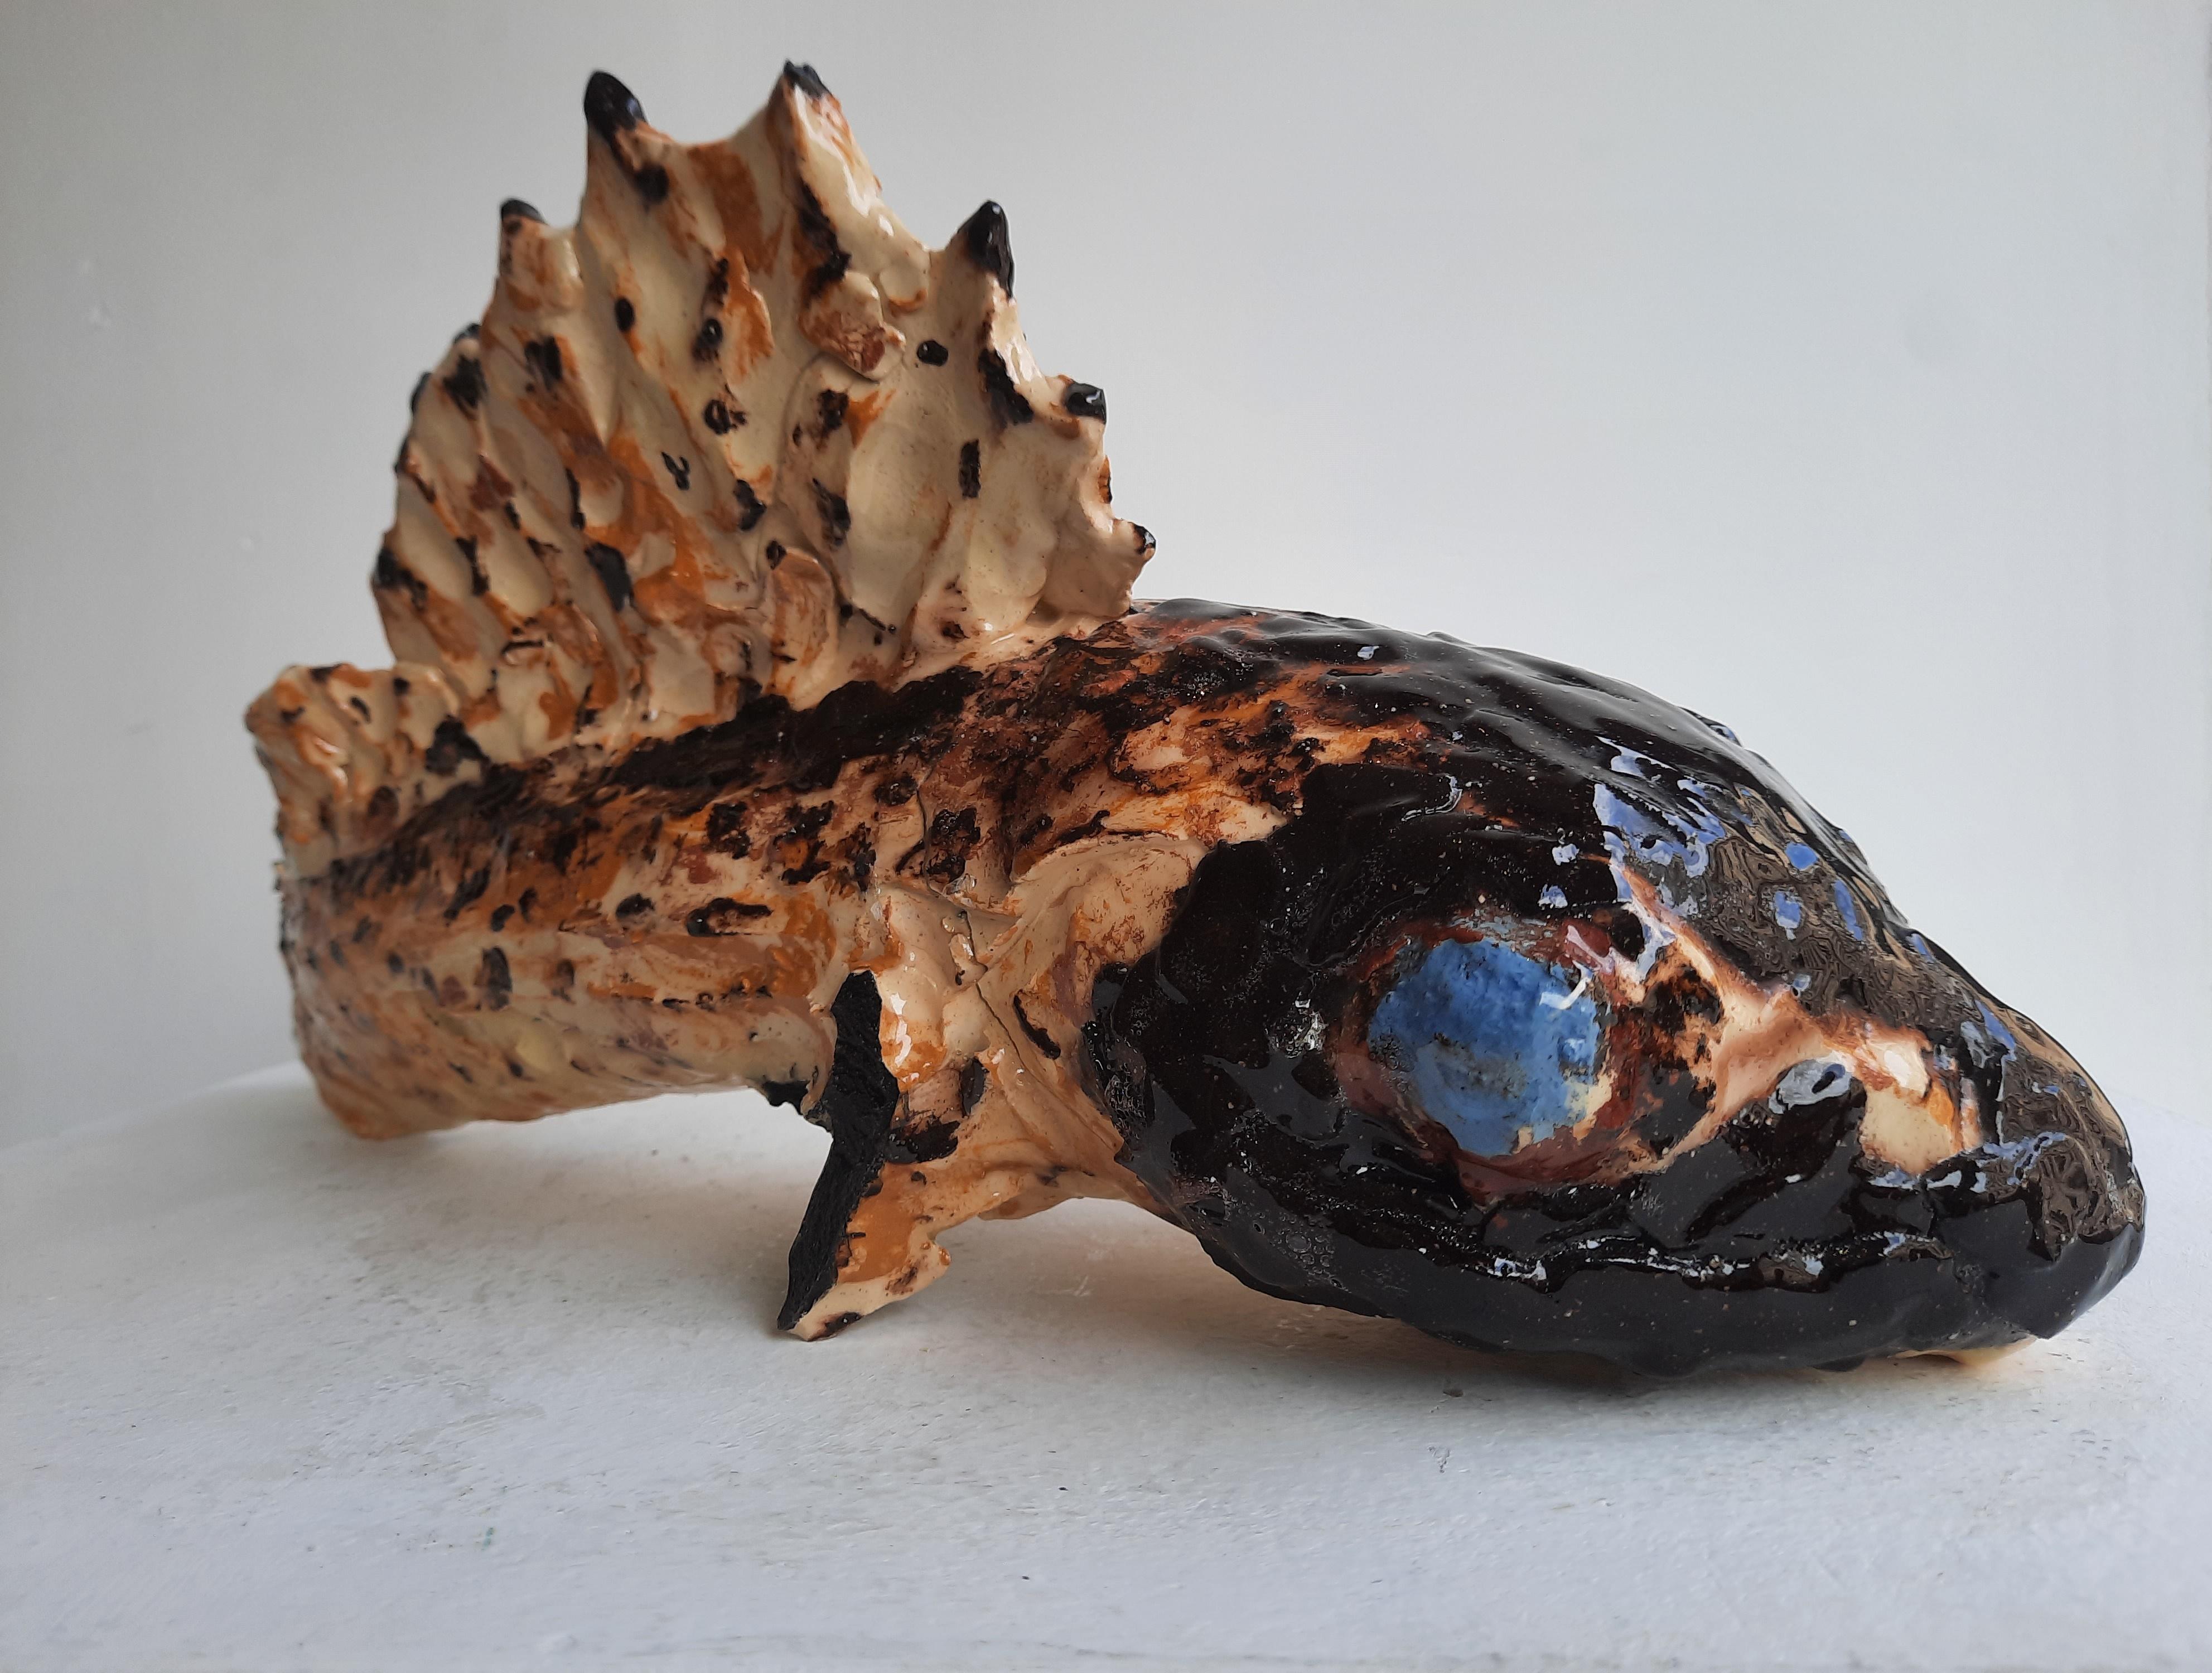 Fragment de sculpture contemporaine de Nicolas Kennett poisson en terre cuite